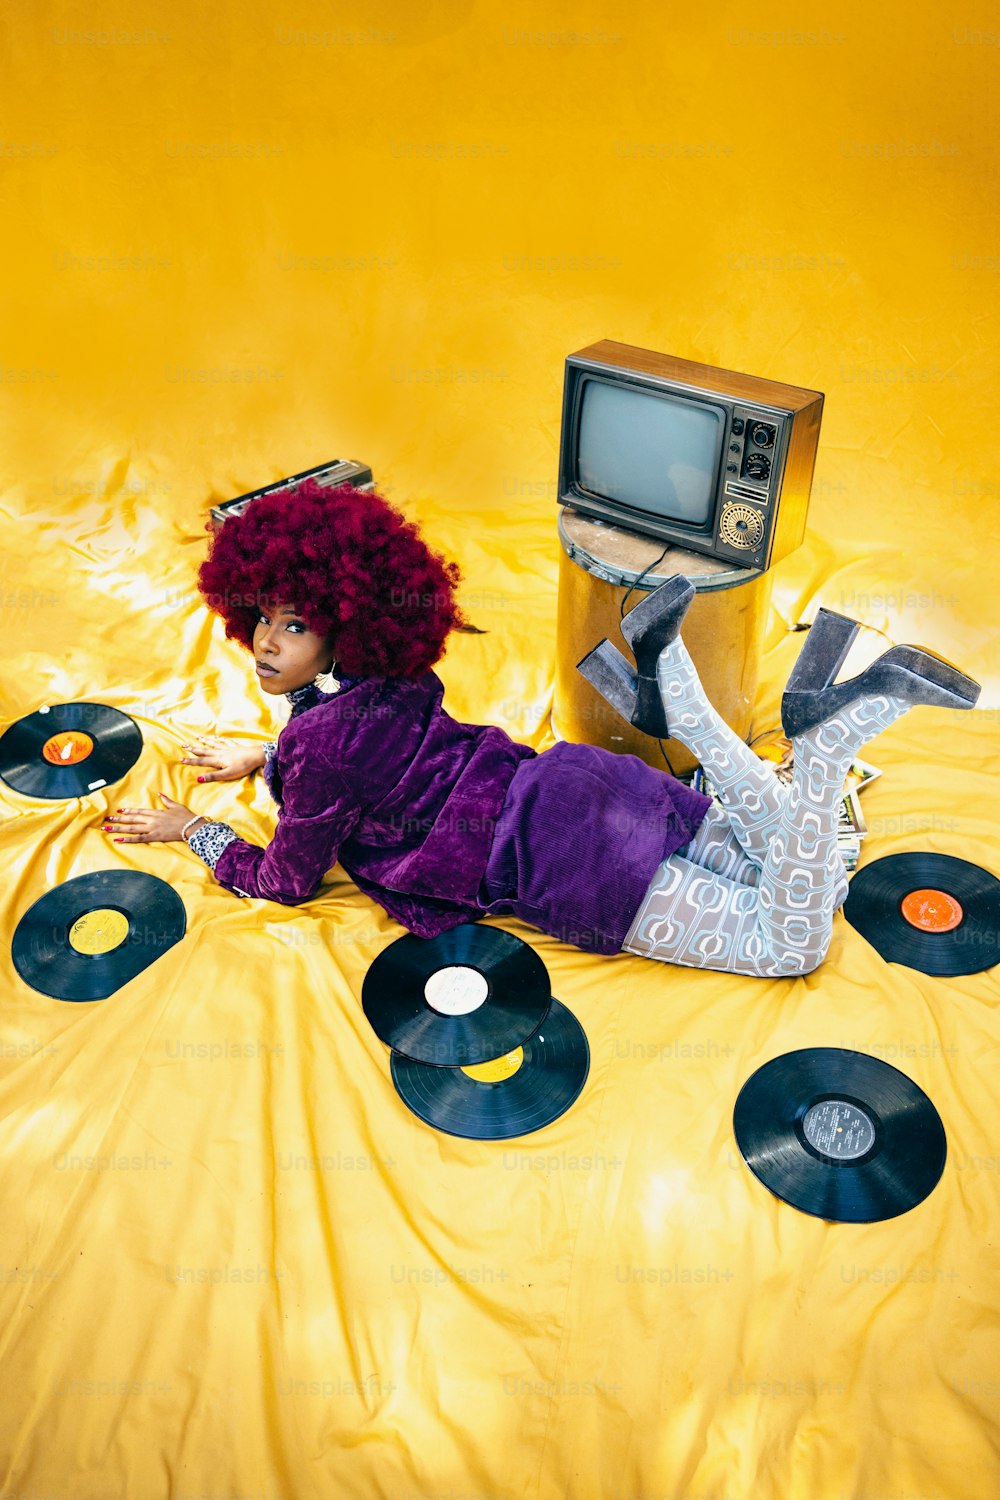 una donna sdraiata sopra un letto coperto di dischi